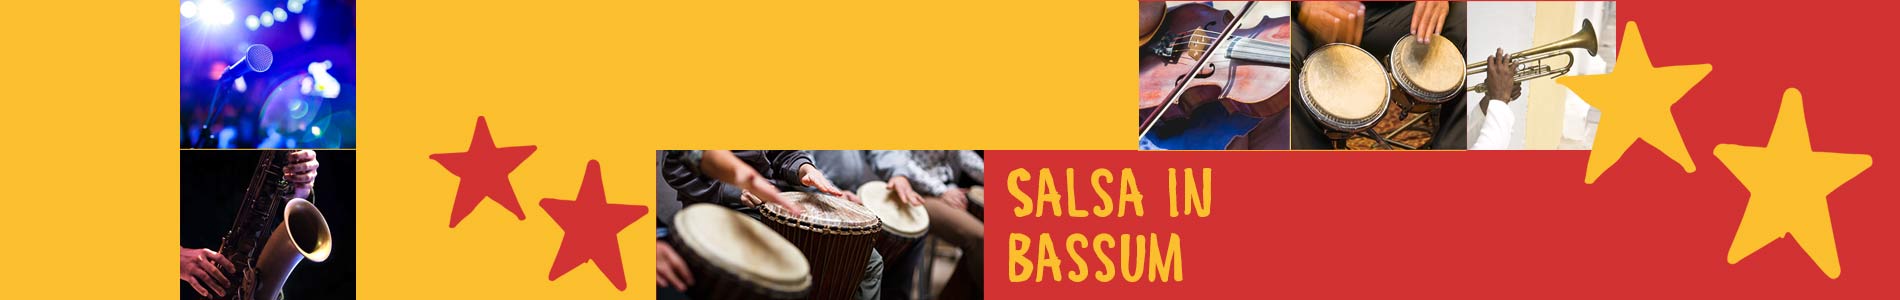 Salsa in Bassum – Salsa lernen und tanzen, Tanzkurse, Partys, Veranstaltungen